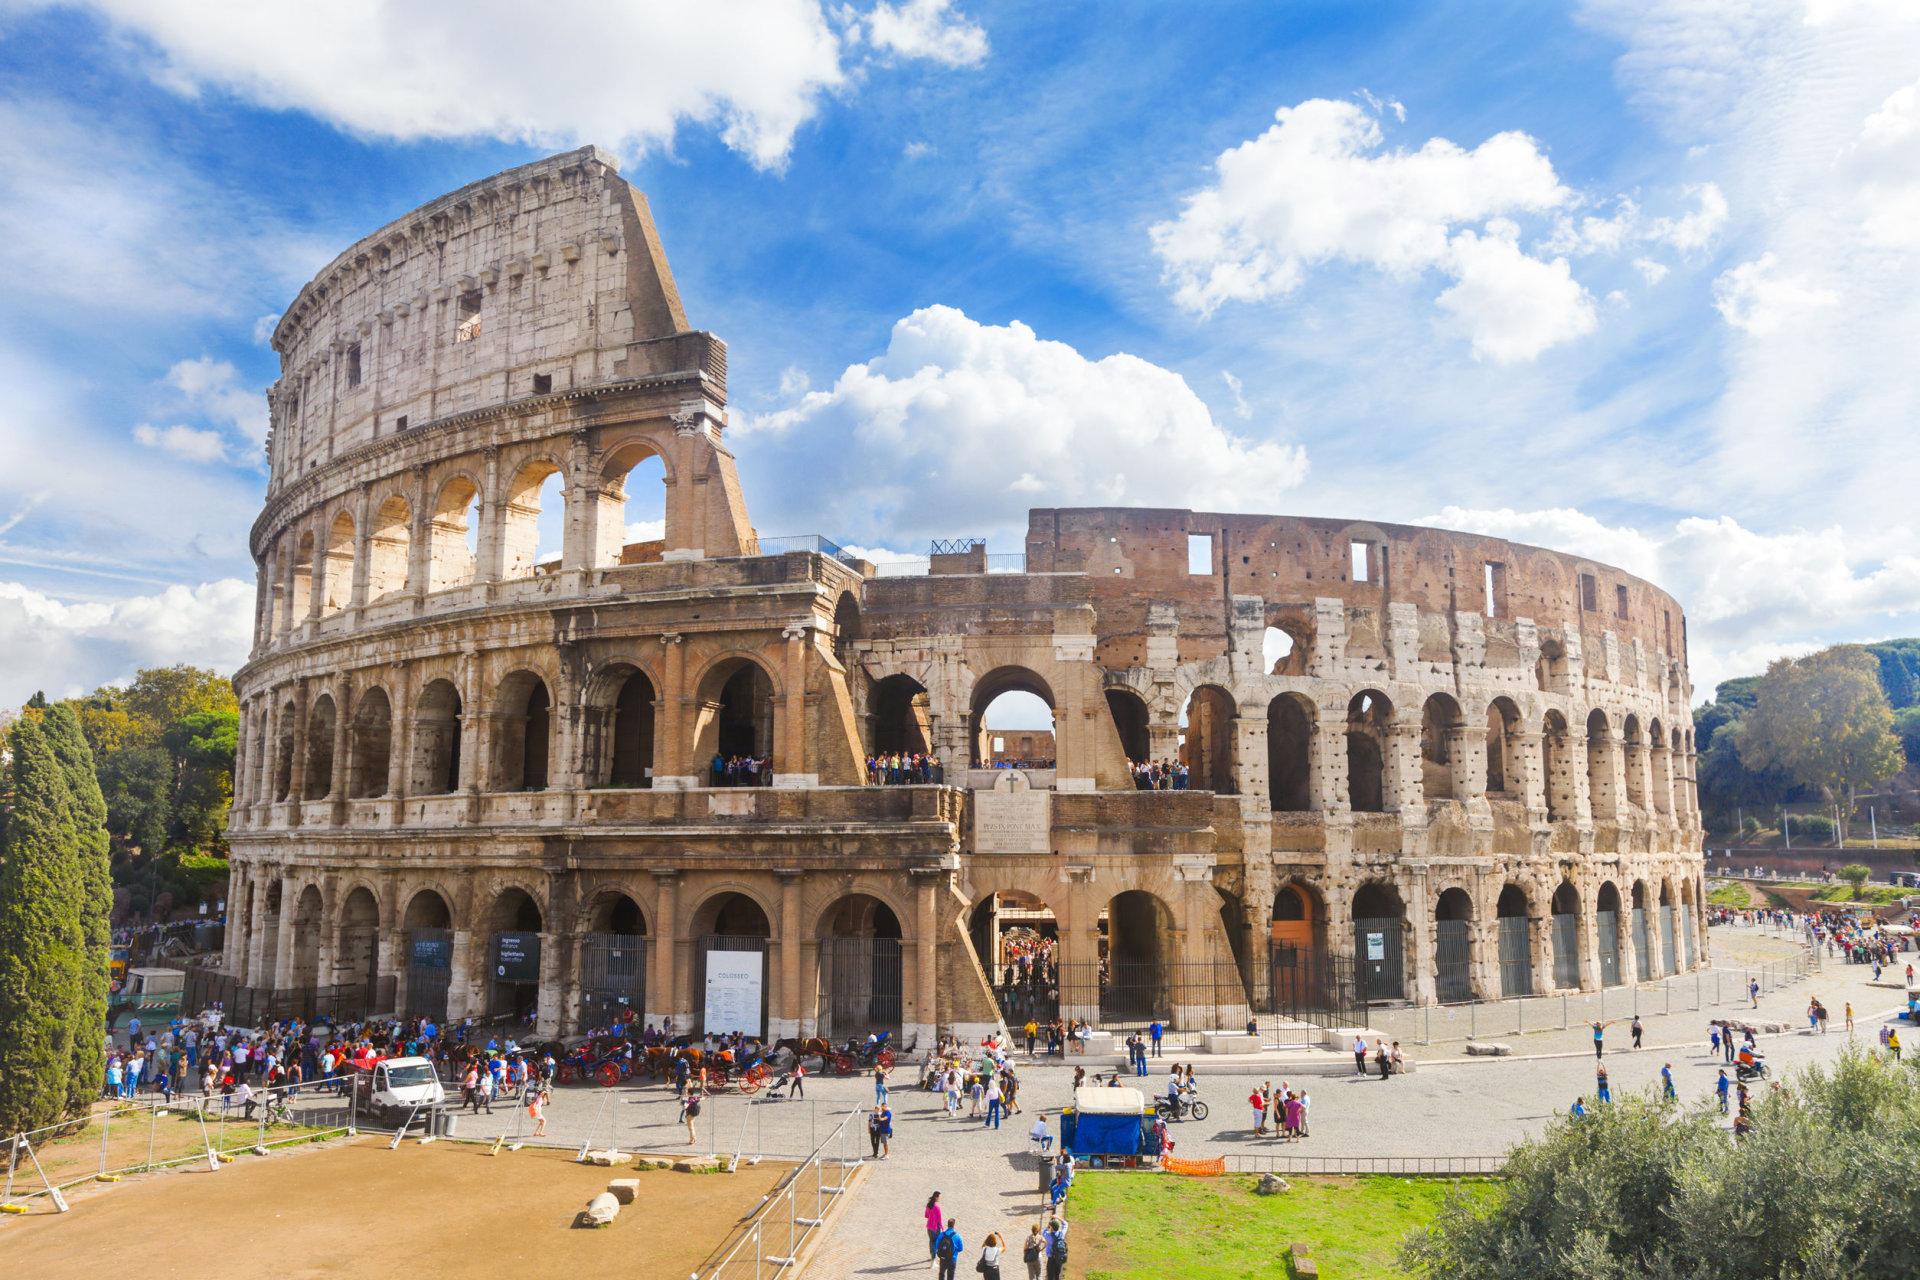 Iliustruotoji istorija: pavojingiausias darbas Romoje – imperatoriaus - Verslo žinios